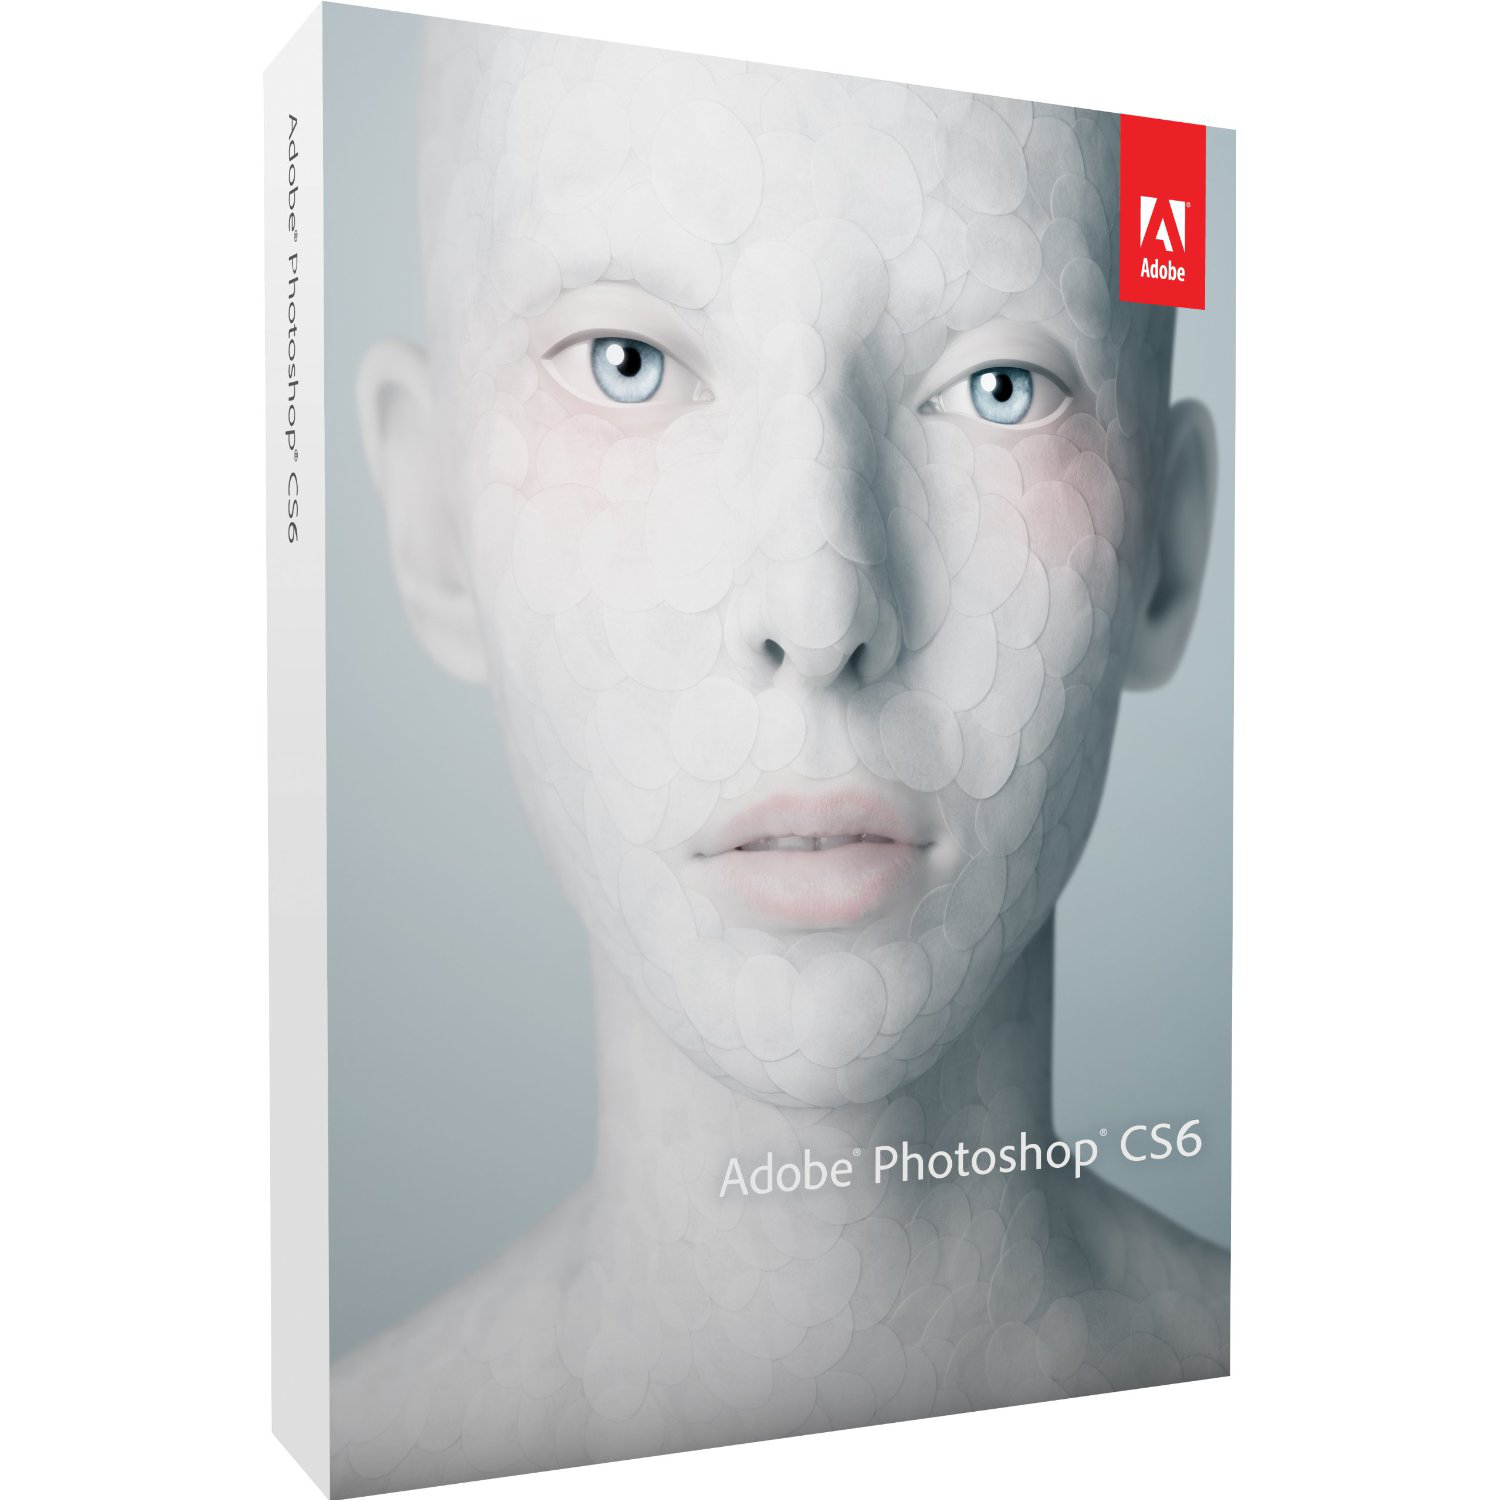 Adobe Photoshop CS6 til Mac